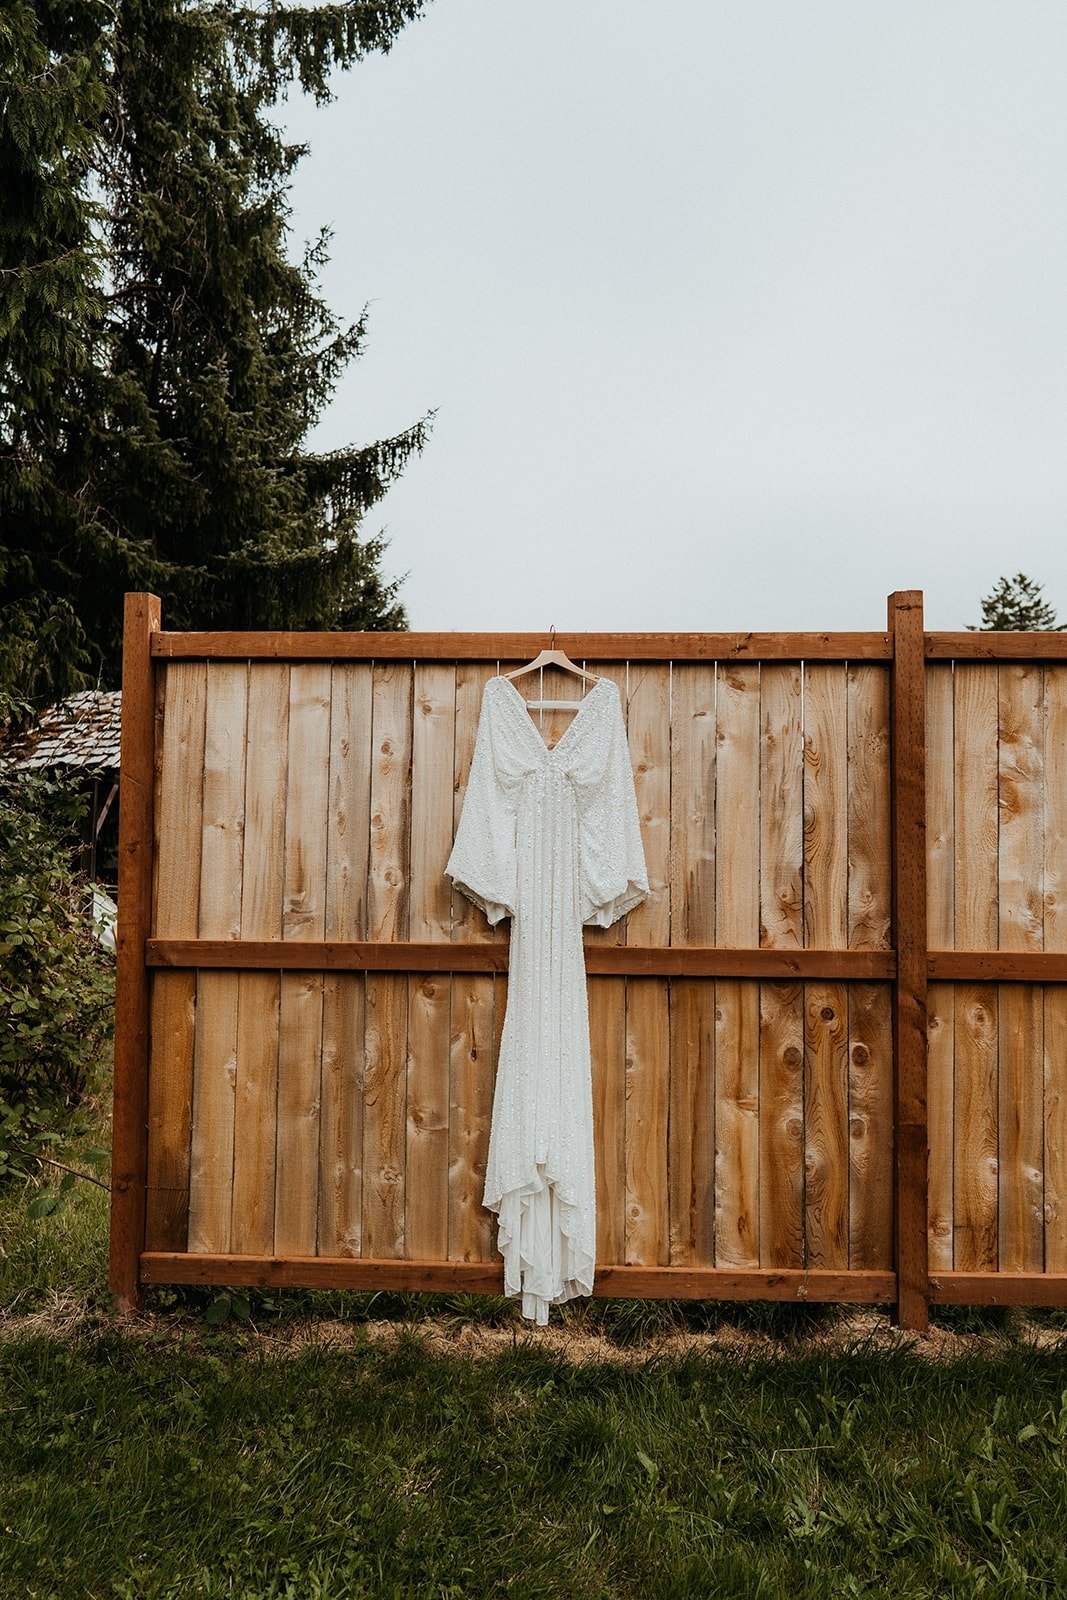 White boho wedding dress hanging on wood fence